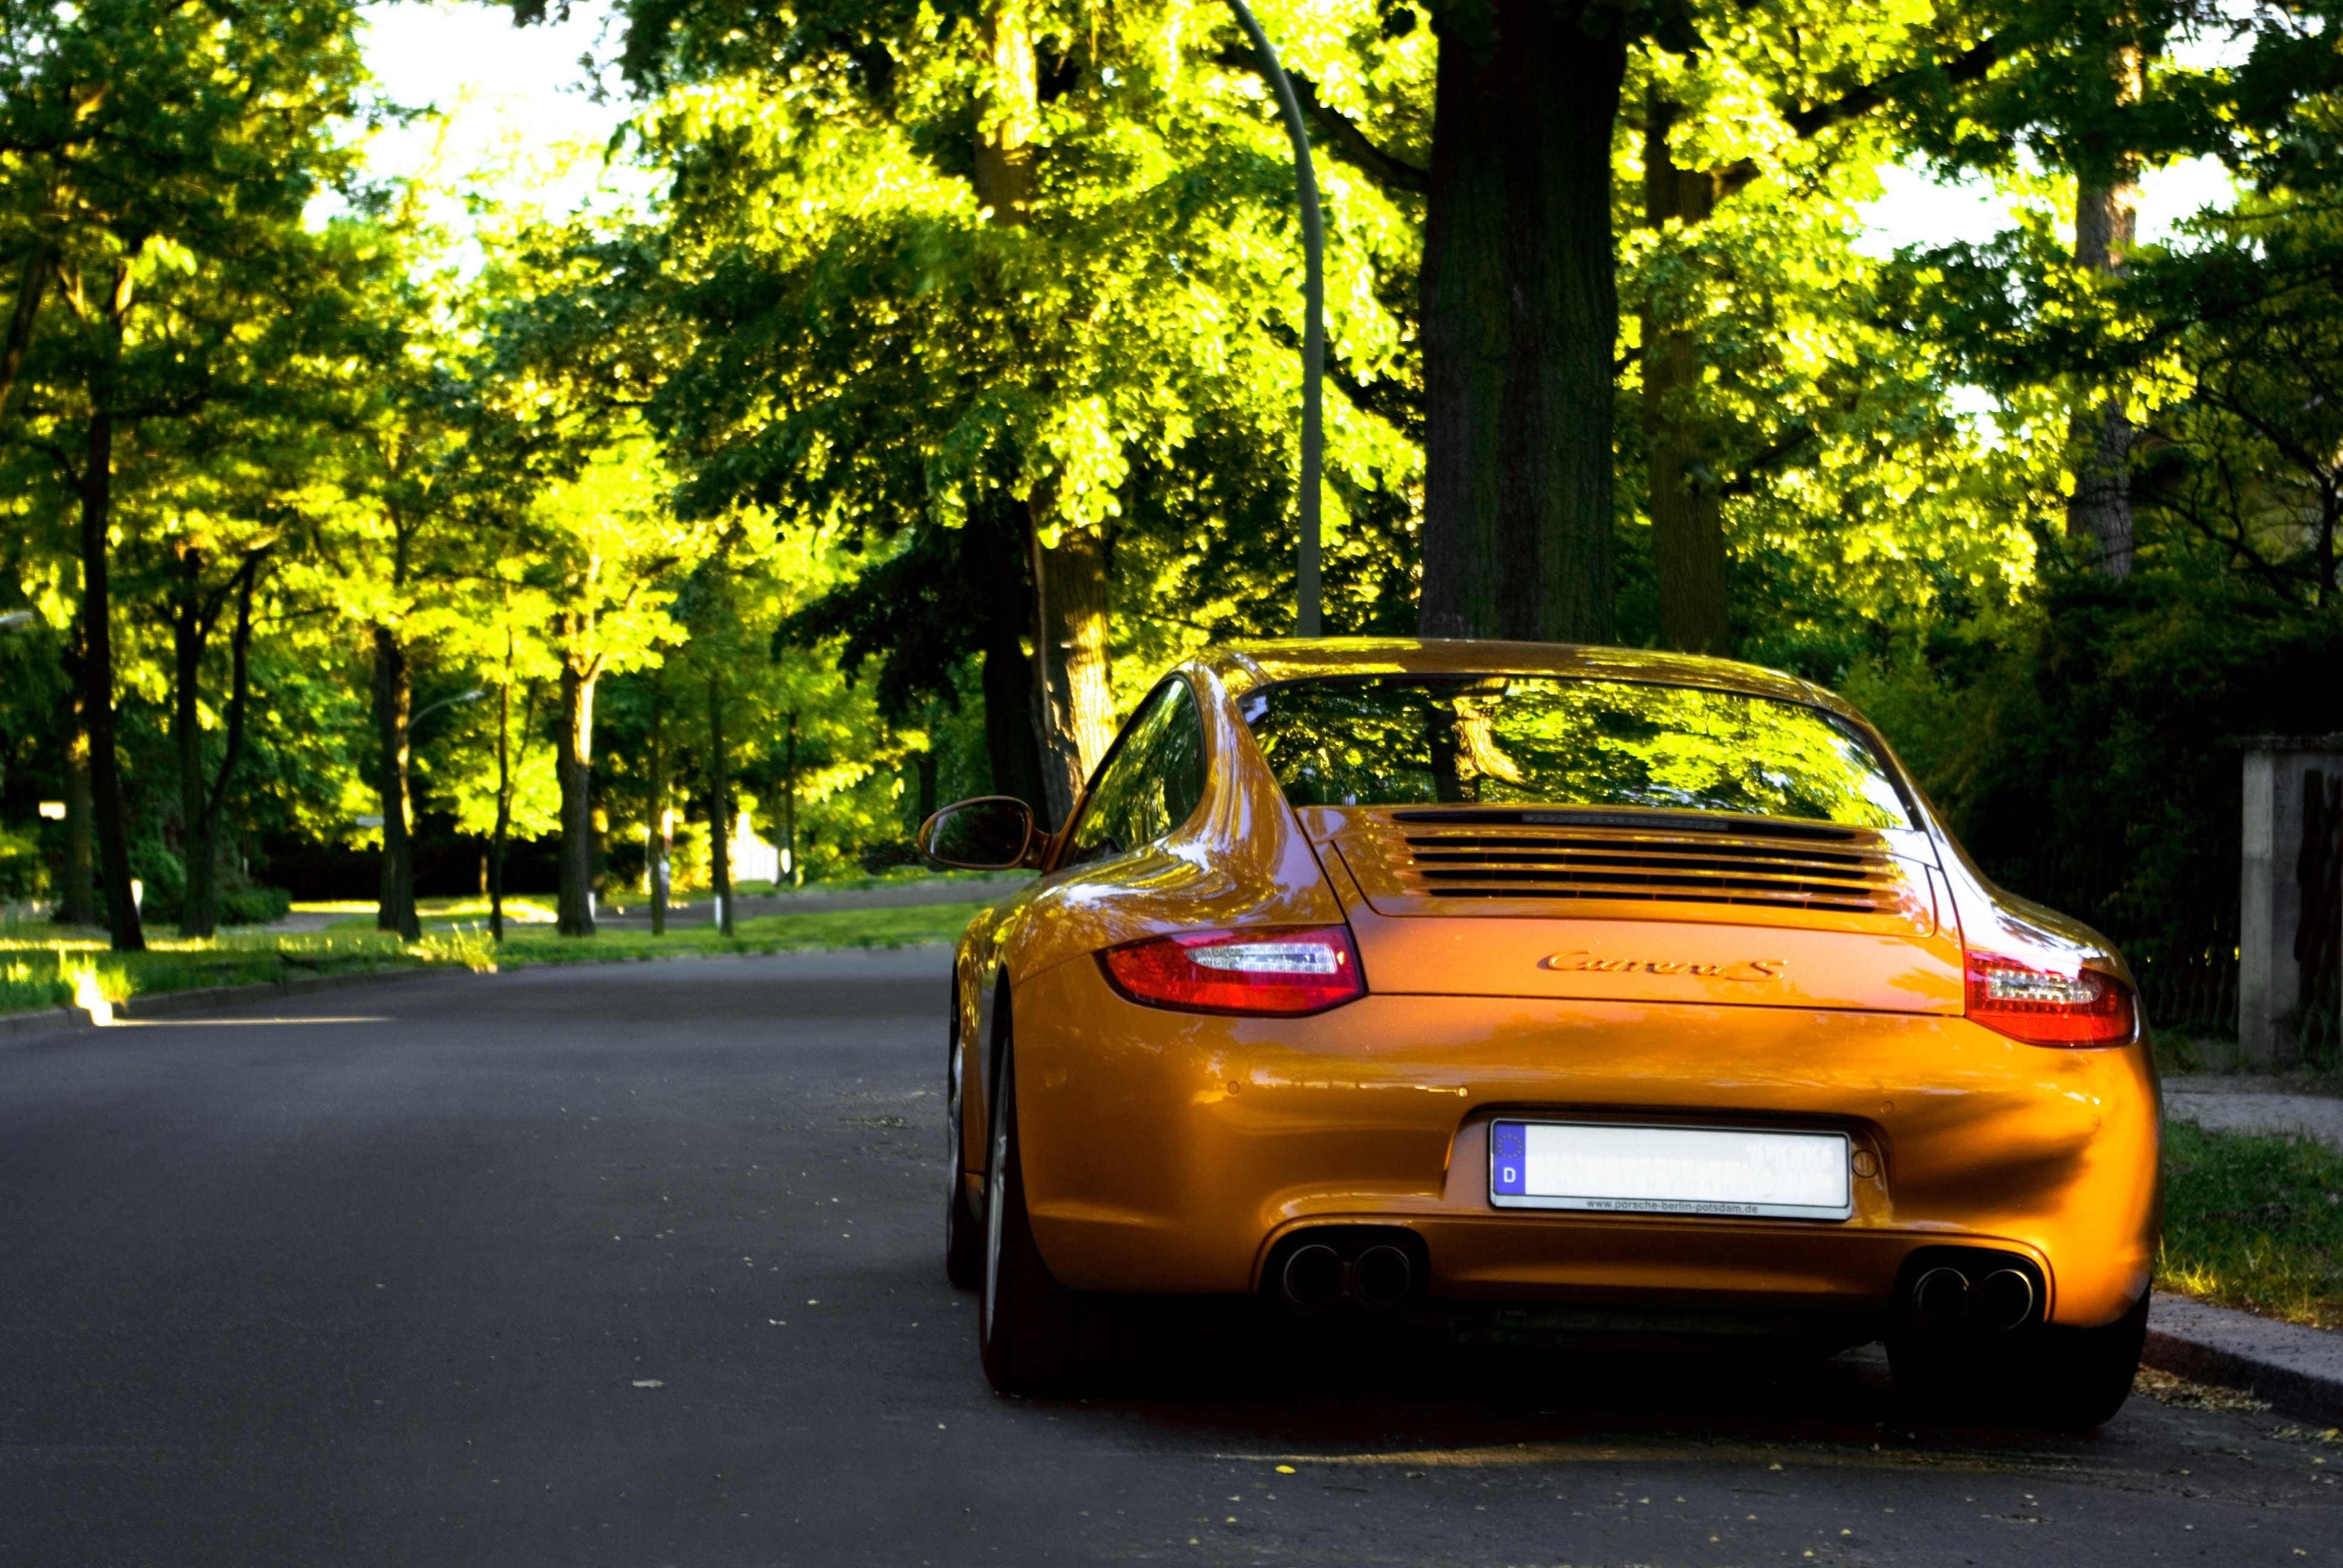 Кар б г. Порше 911 желтый. Порше 911 в лесу. Porsche 911 фон. Порше 911 оранжевый.